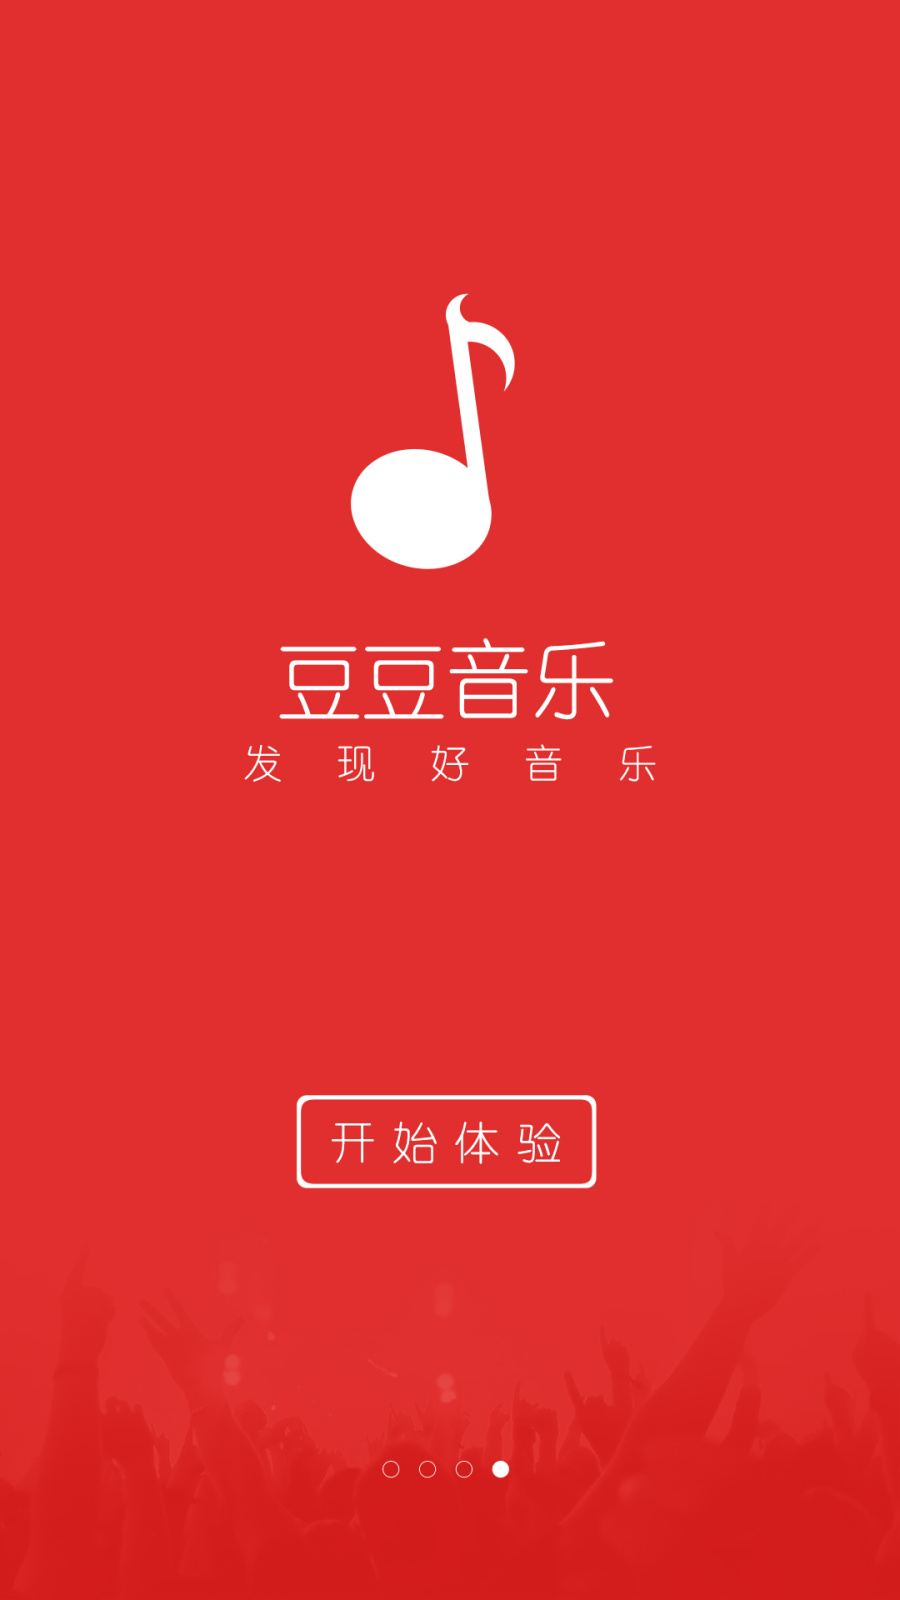 豆豆音乐App|移动设备\/APP界面|GUI|素颜女孩